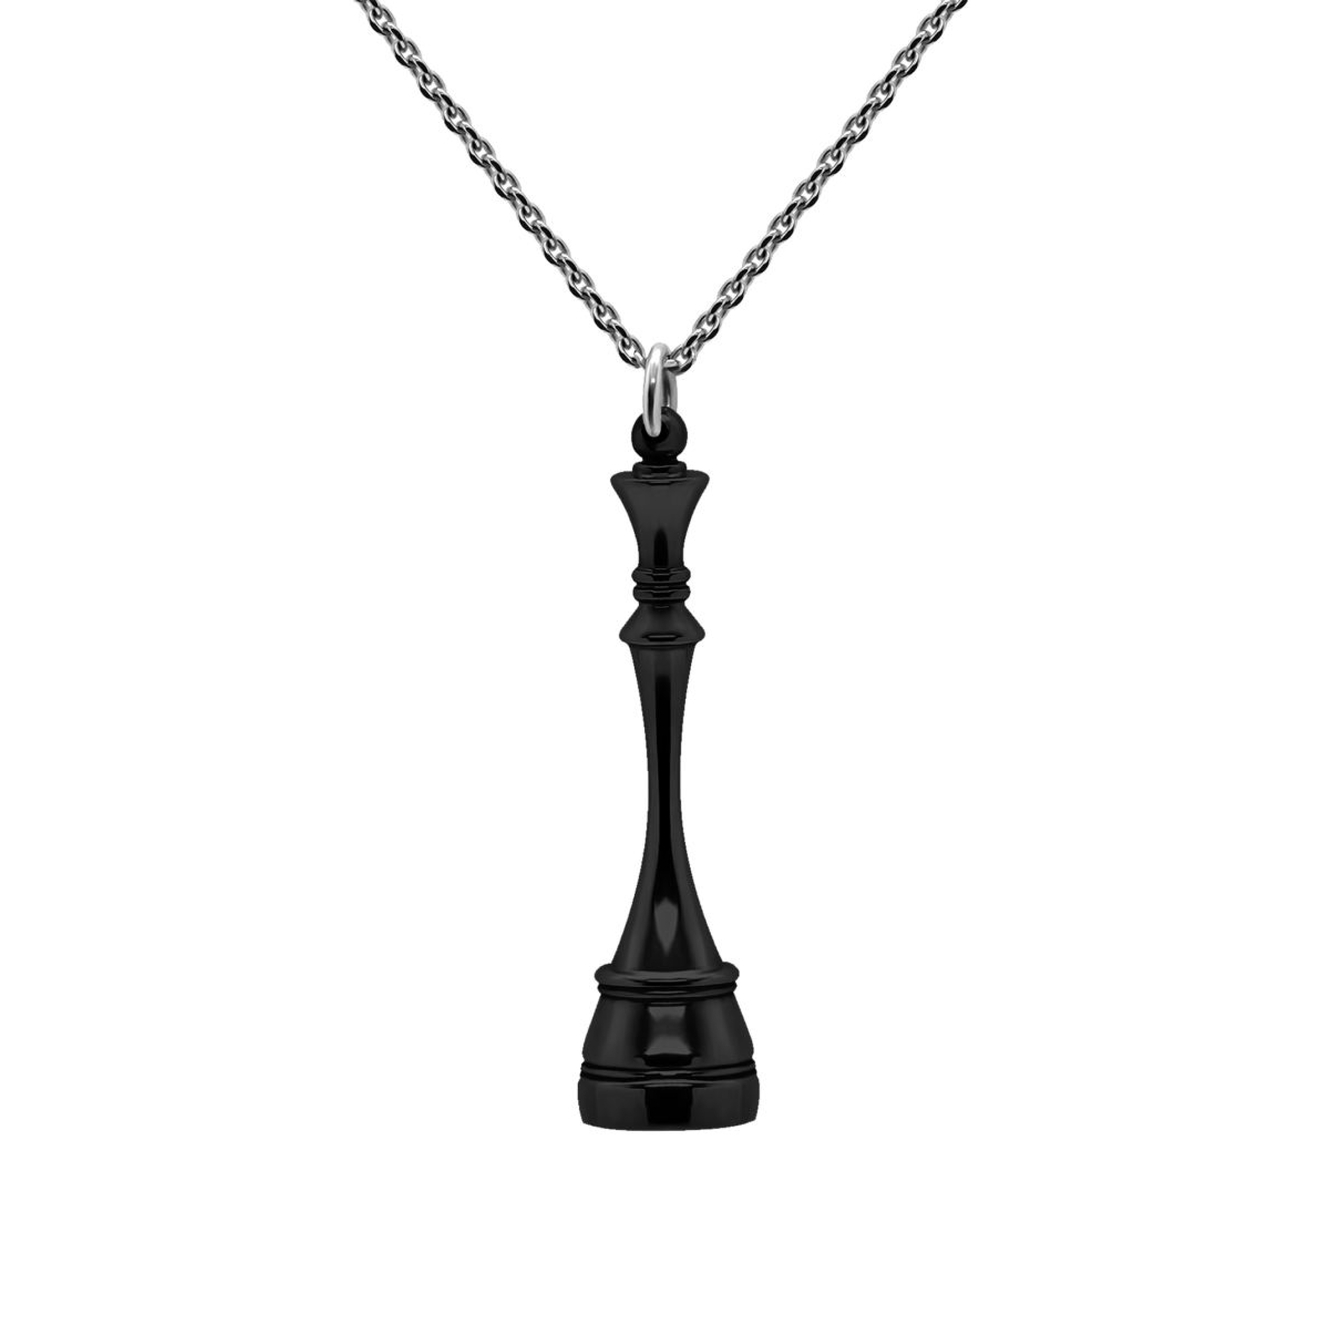 Prosto Jewelry Подвеска Королева Black из серебра подвеска серебряная prosto jewelry цирк 1 шт